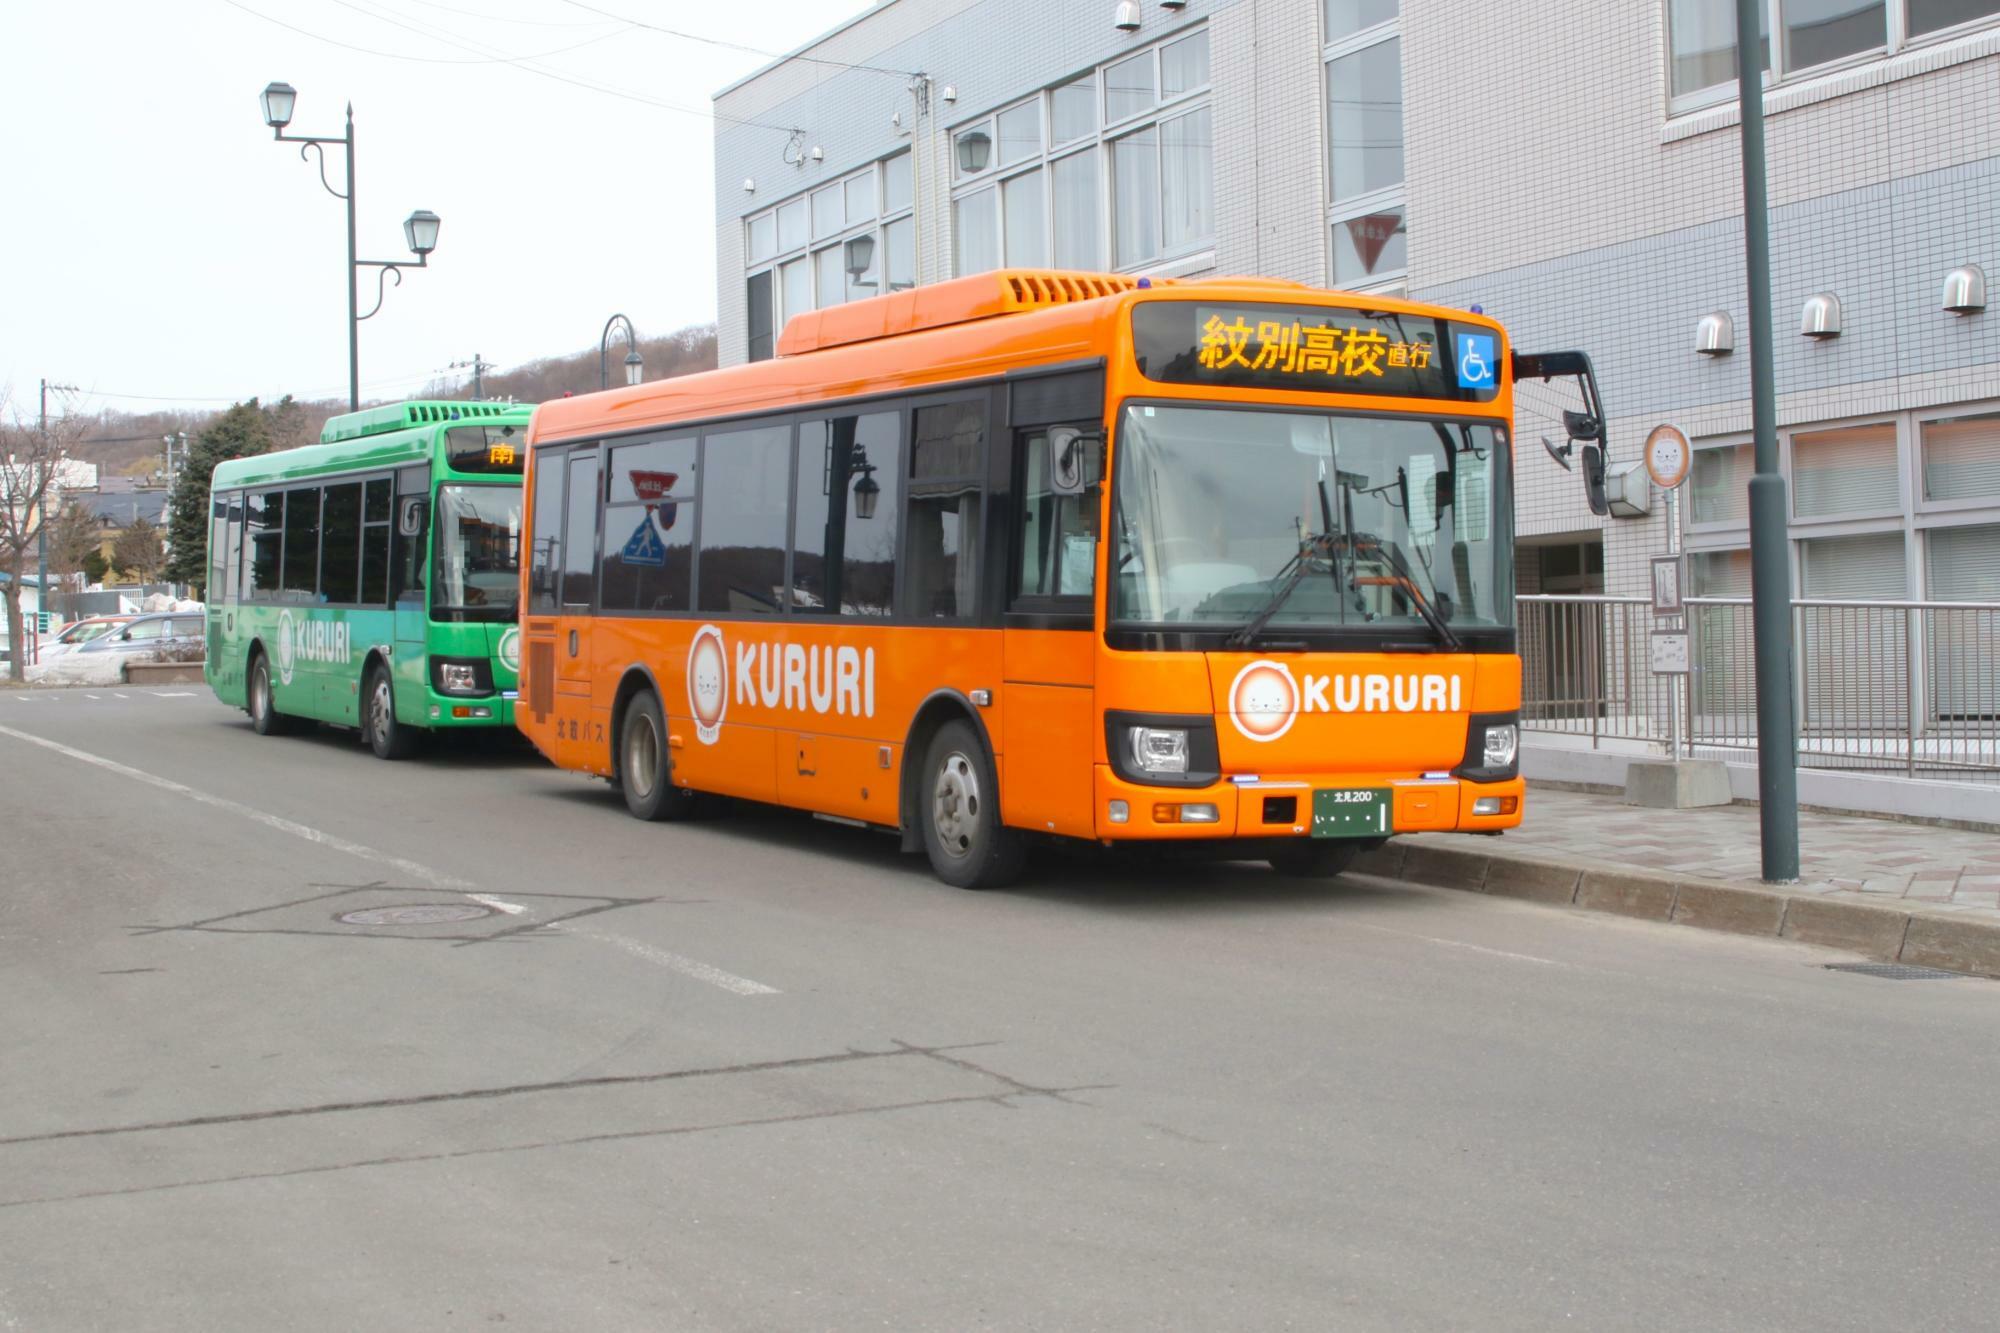 北循環・南循環両方のバスが朝並ぶことがある